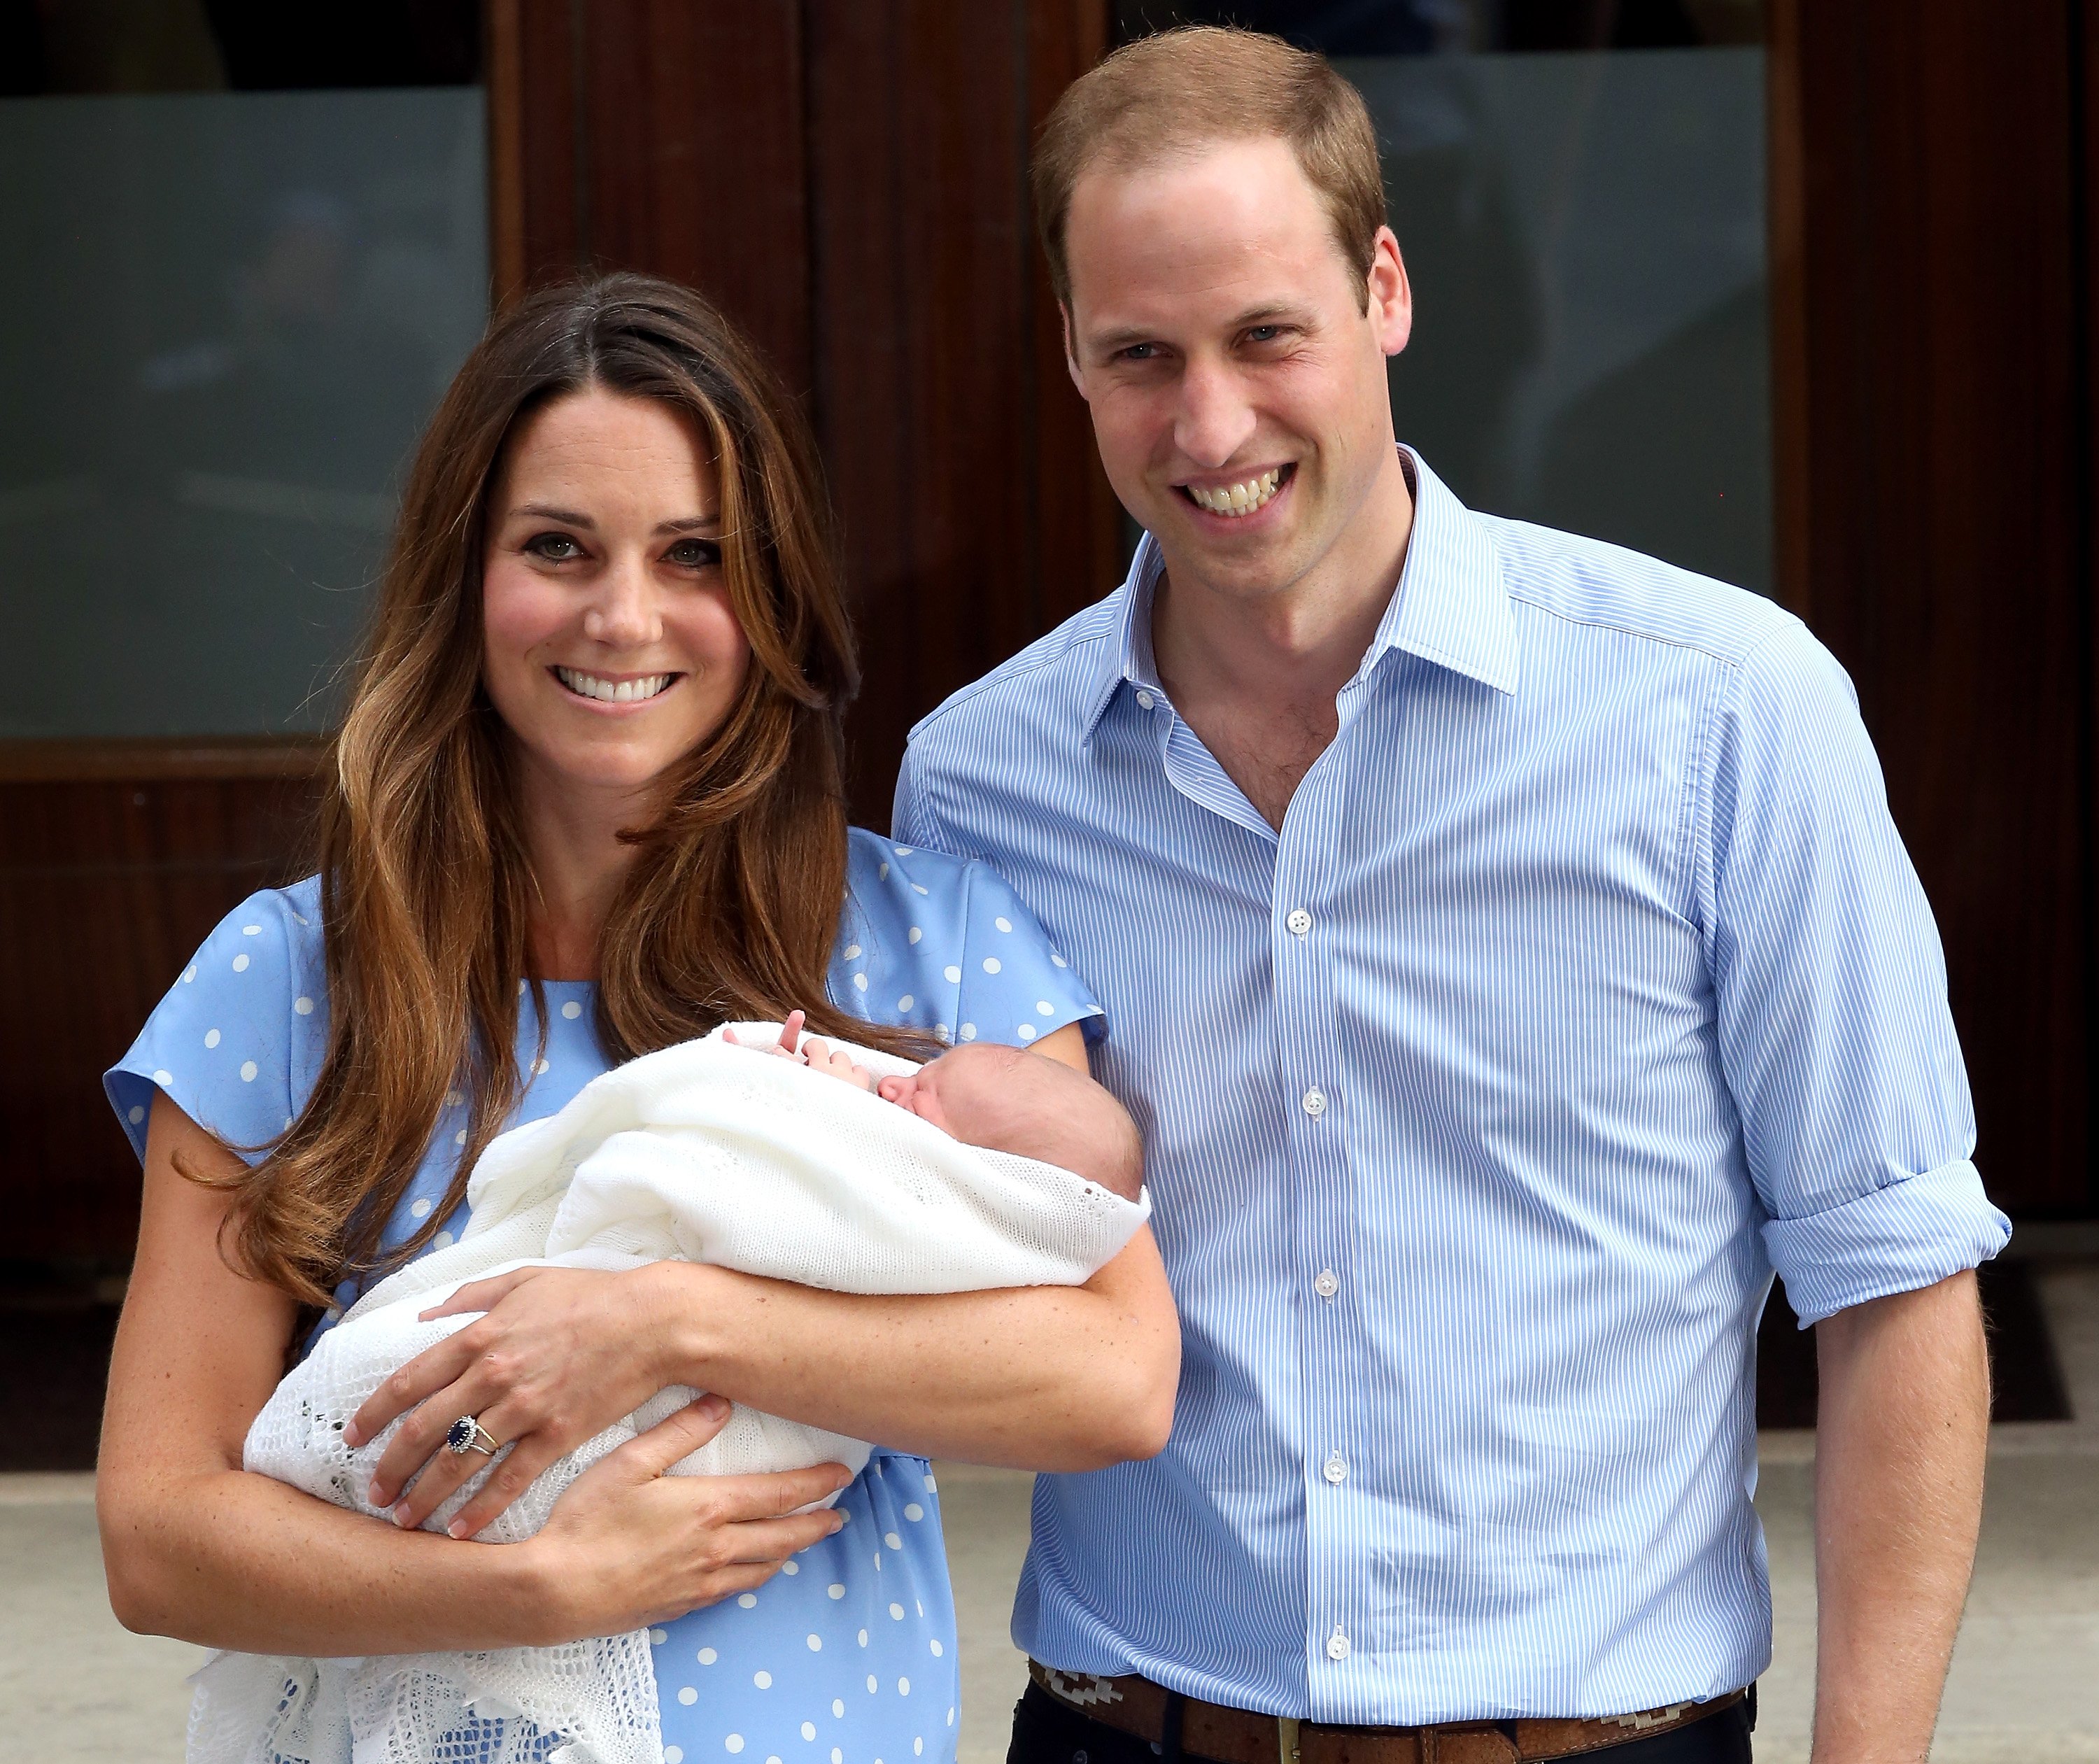 Príncipe William, y Catherine, duques de Cambridge, parten con su hijo recién nacido en el Hospital St Mary's el 23 de julio de 2013 en Londres, Inglaterra | Foto: Getty Images